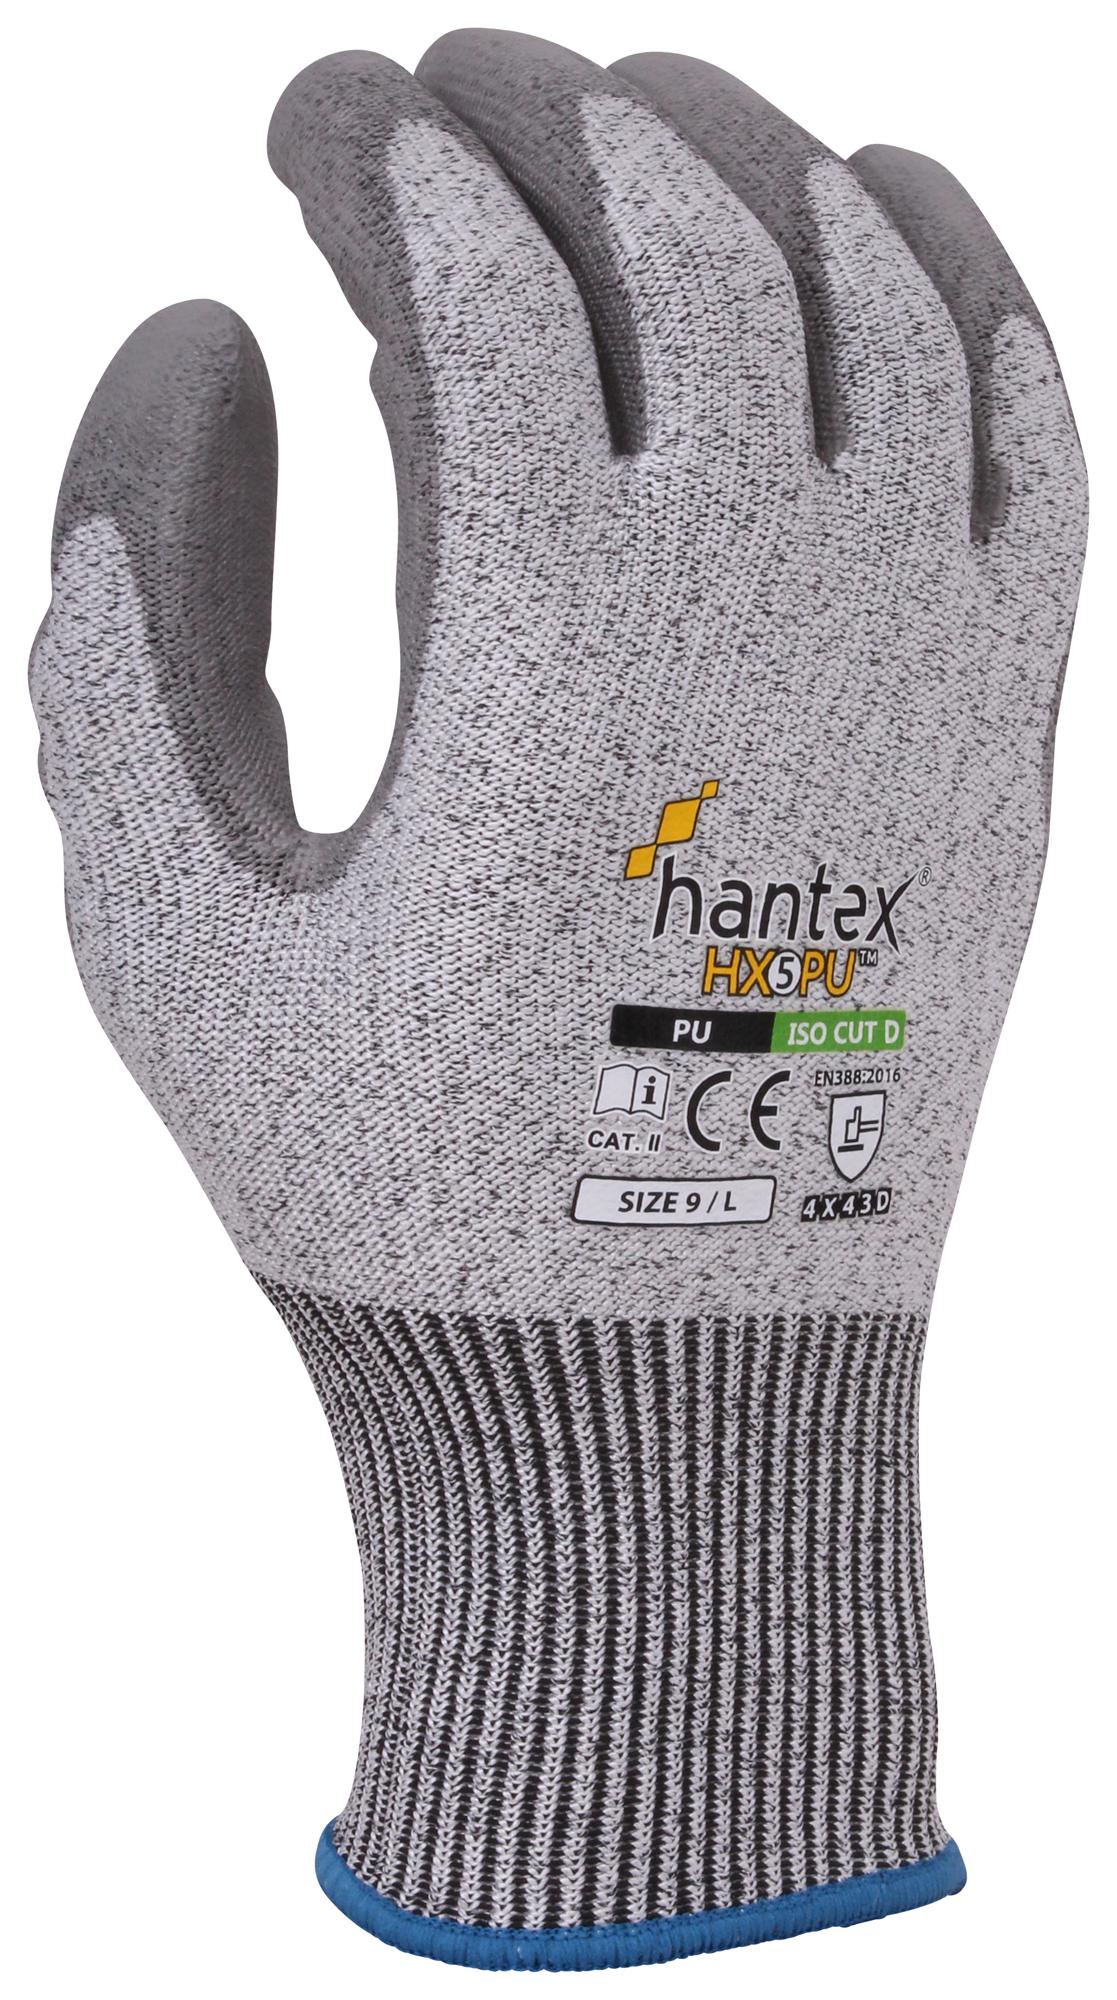 Uci G/hantex-Hx5/pu/08 Gloves, Hppe, Grey, M